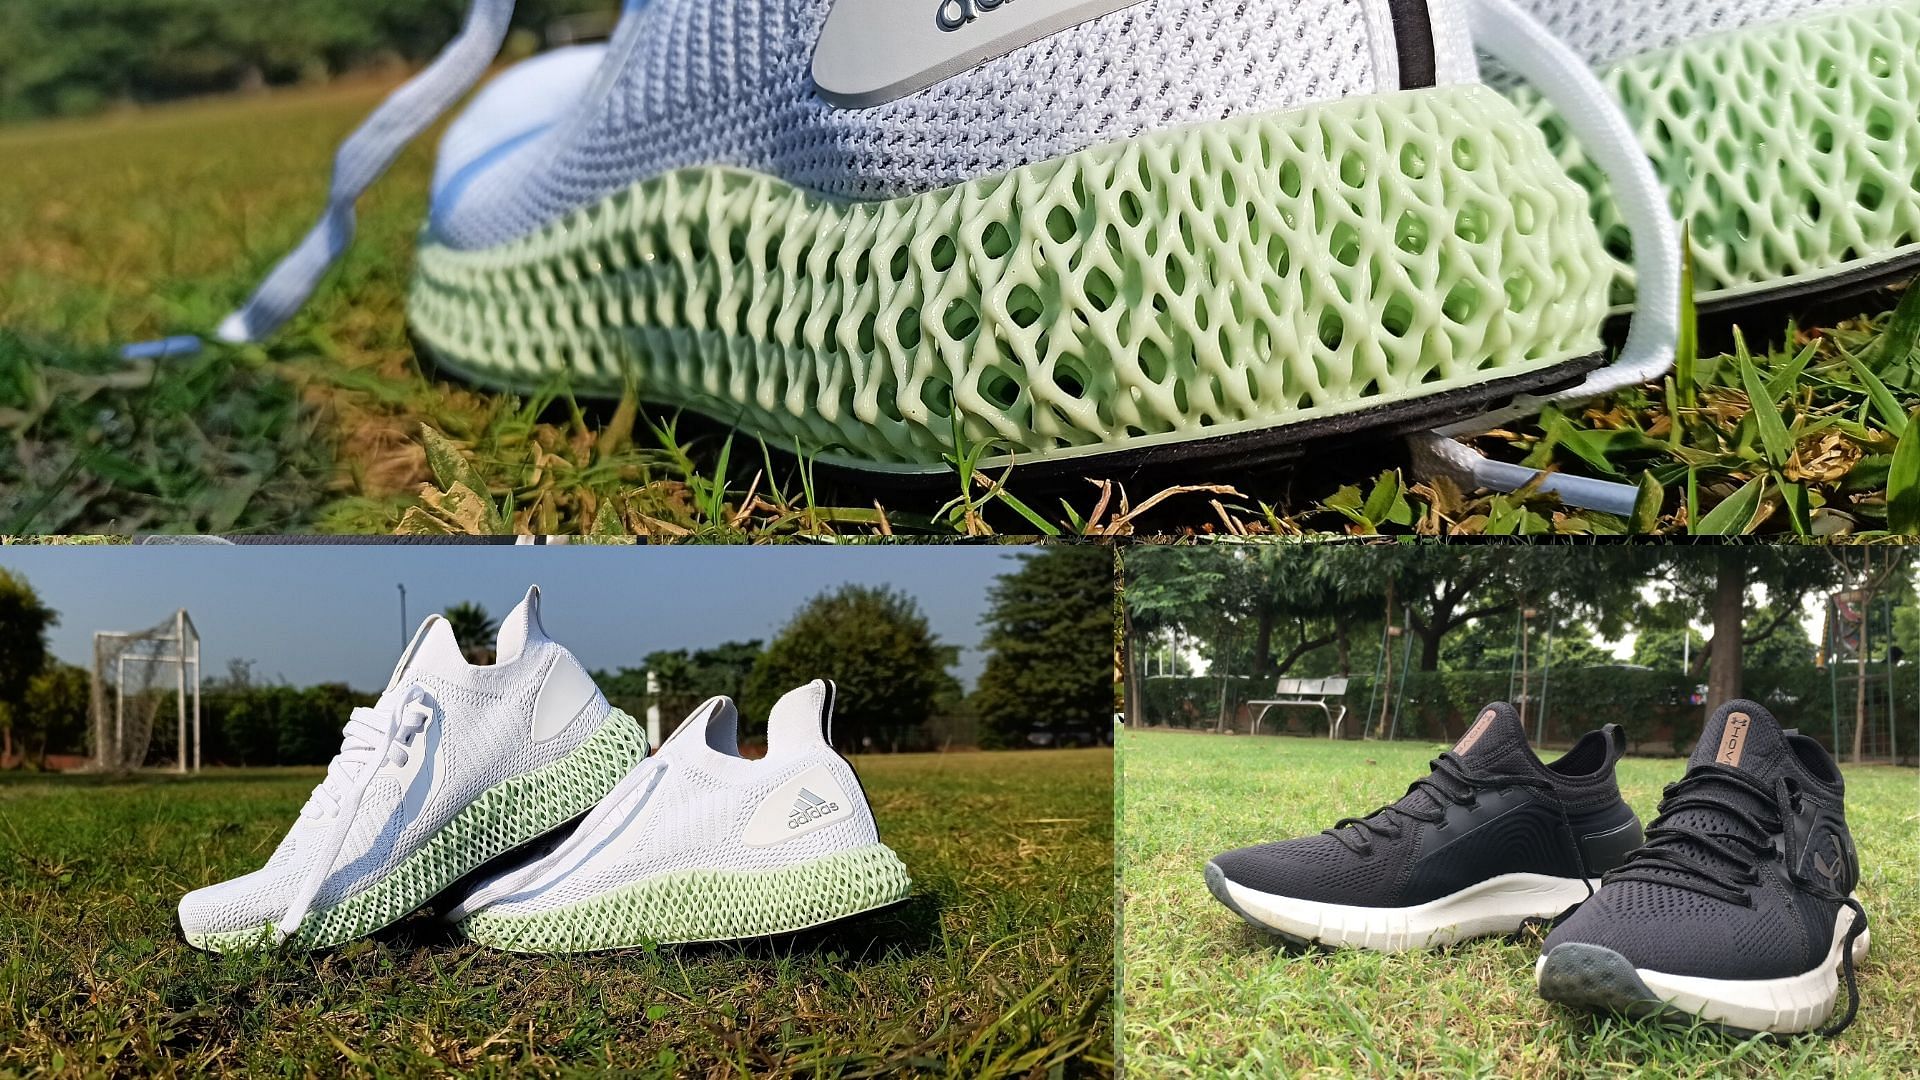 Meet the Futurecraft 4D, the 3D-printed Shoe From Adidas | Men's Journal -  Men's Journal